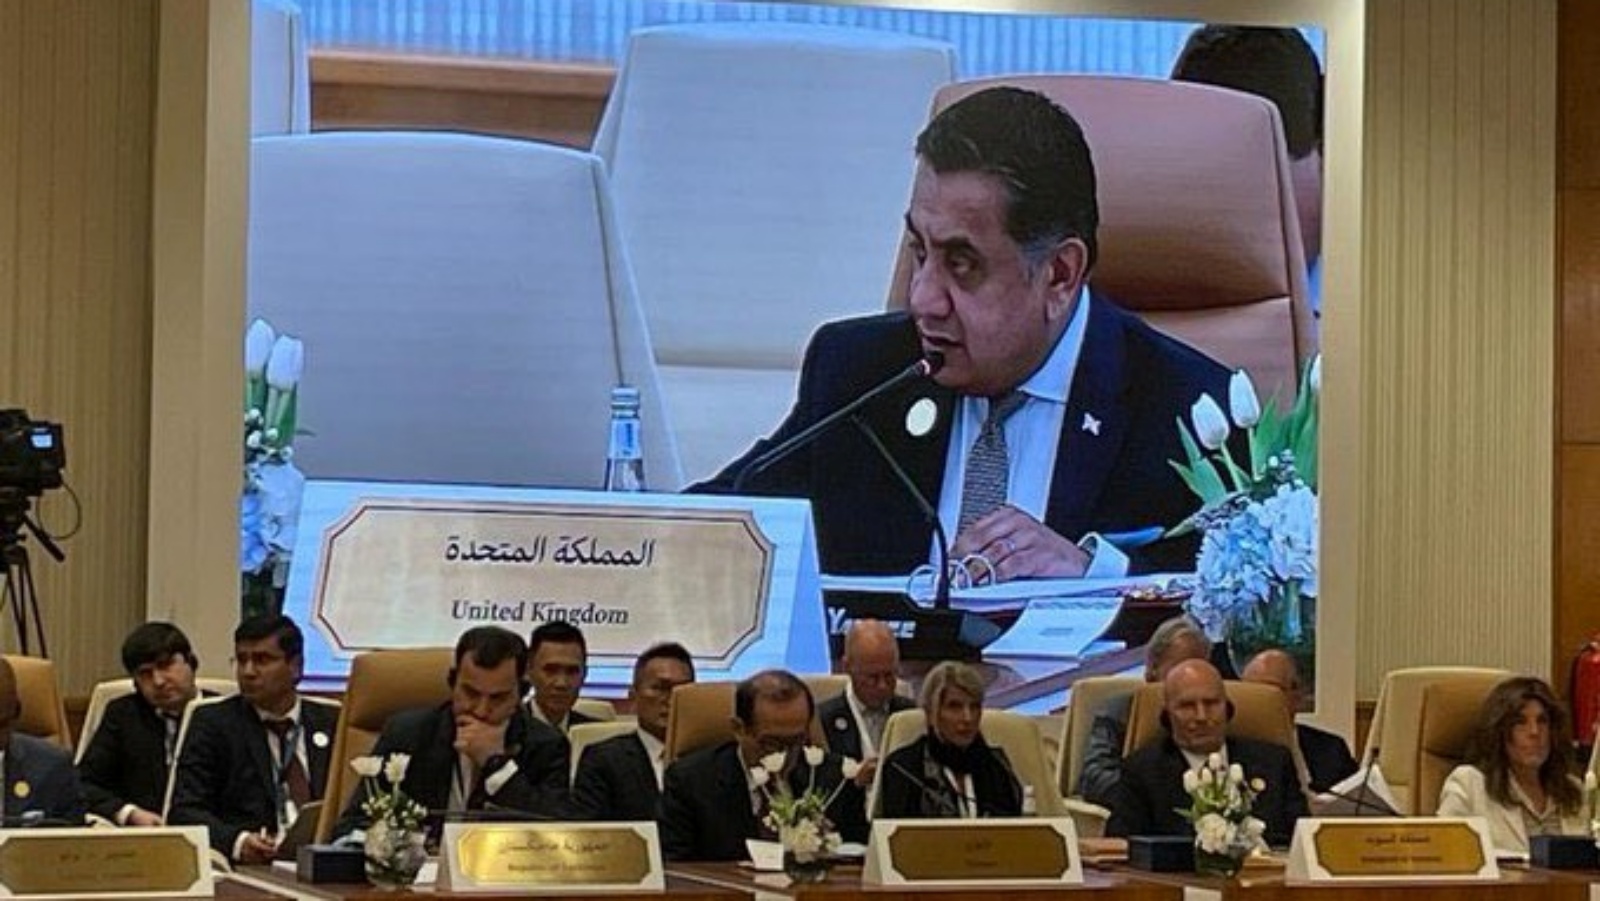 الوزير البريطاني لورد أحمد متحدثا في مؤتمر التحالف الدولي في الرياض